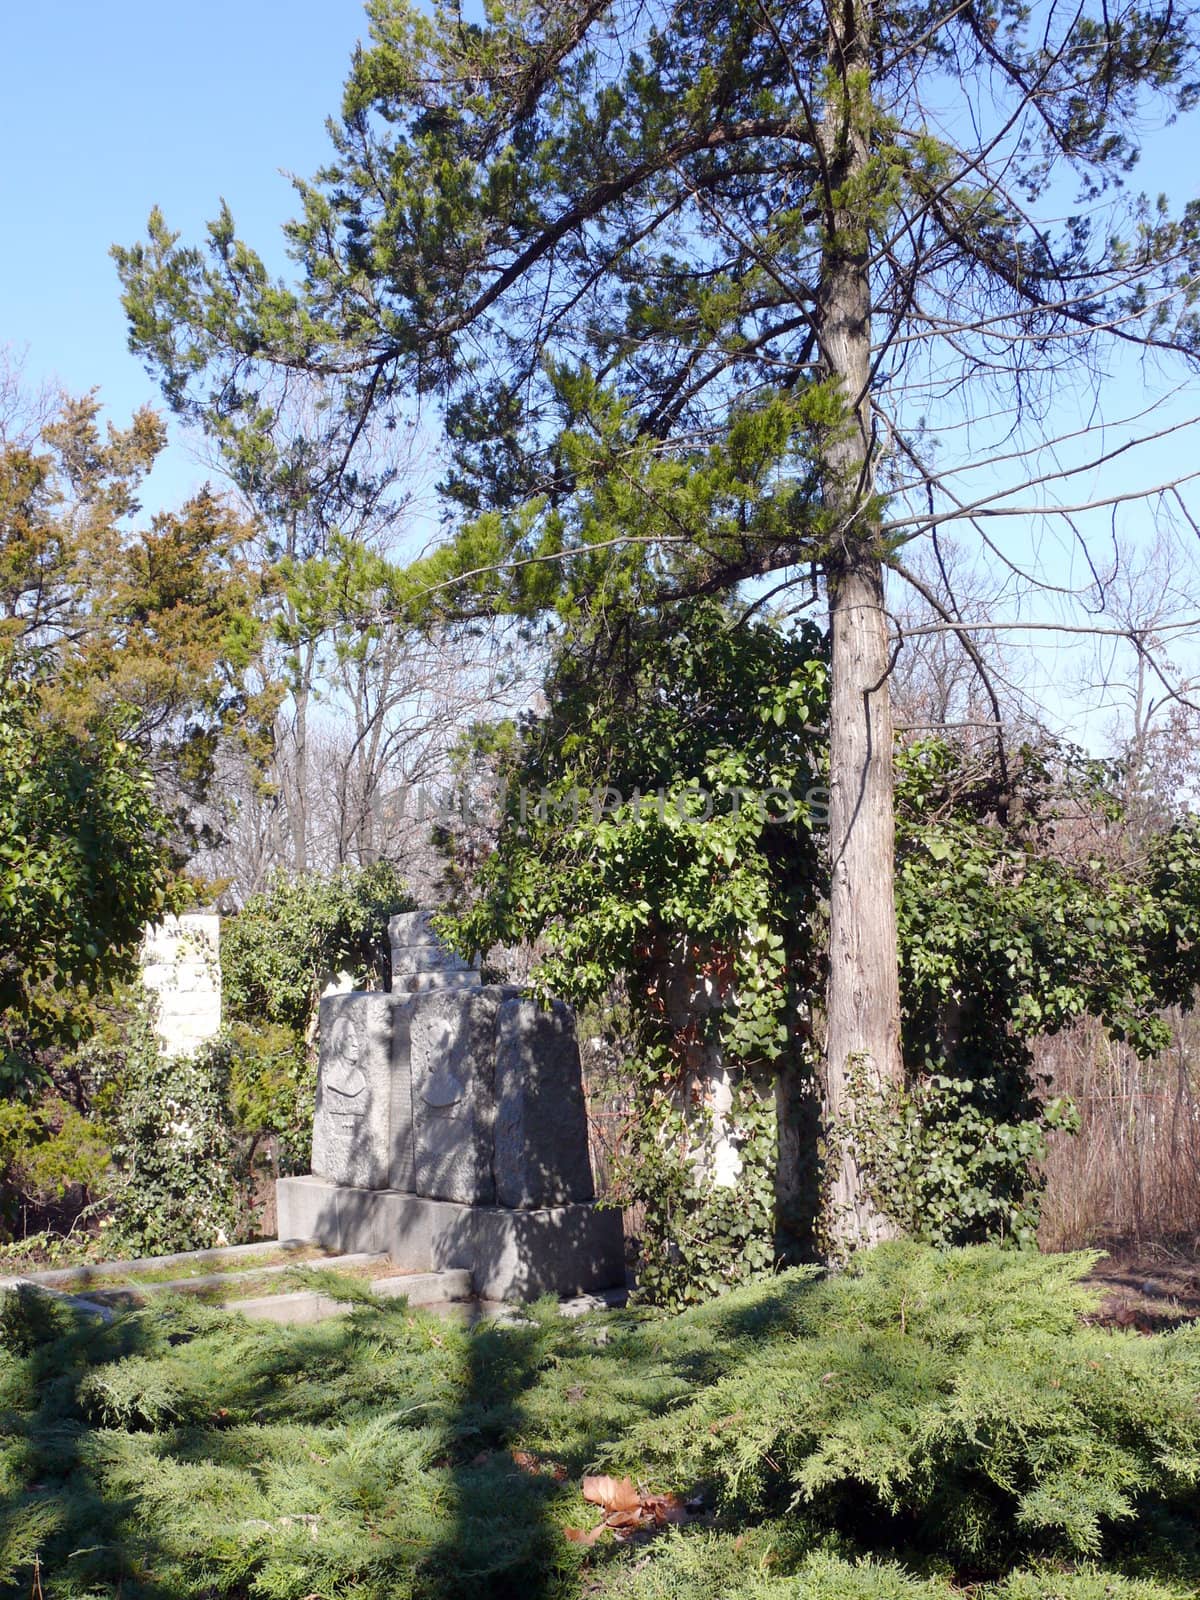 old gravestones in Skobelev park, Pleven, Bulgaria by Stoyanov